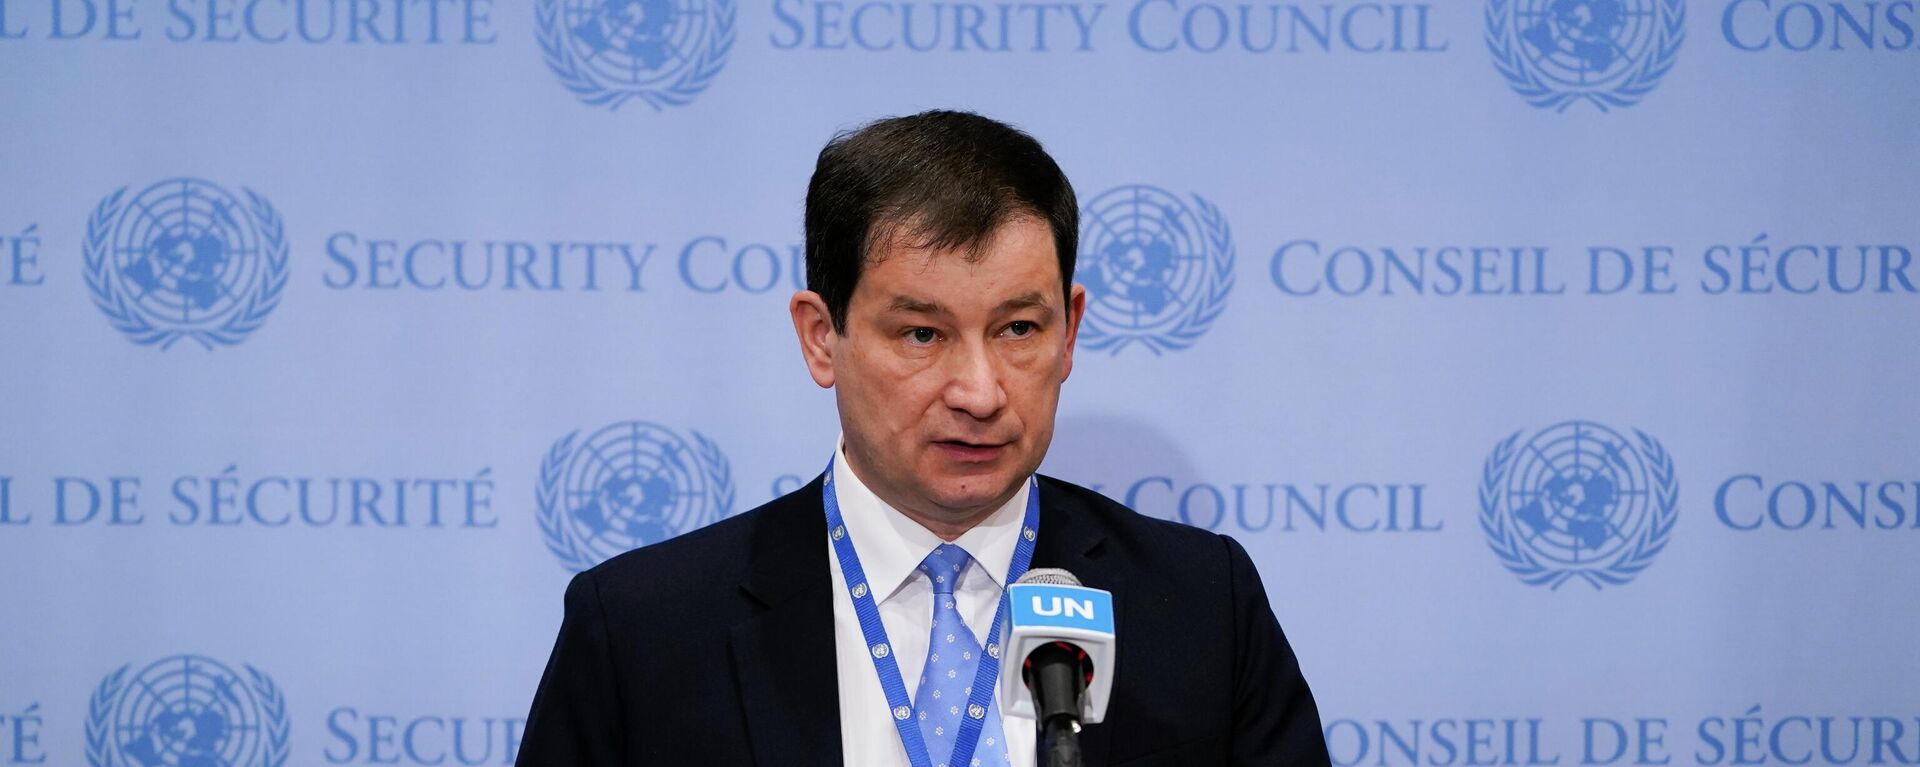 Vice-chanceler russo na Organização das Nações Unidas (ONU), Dmitry Polyanskiy fala a jornalistas na organização, em 19 de abril de 2022 - Sputnik Brasil, 1920, 17.08.2022